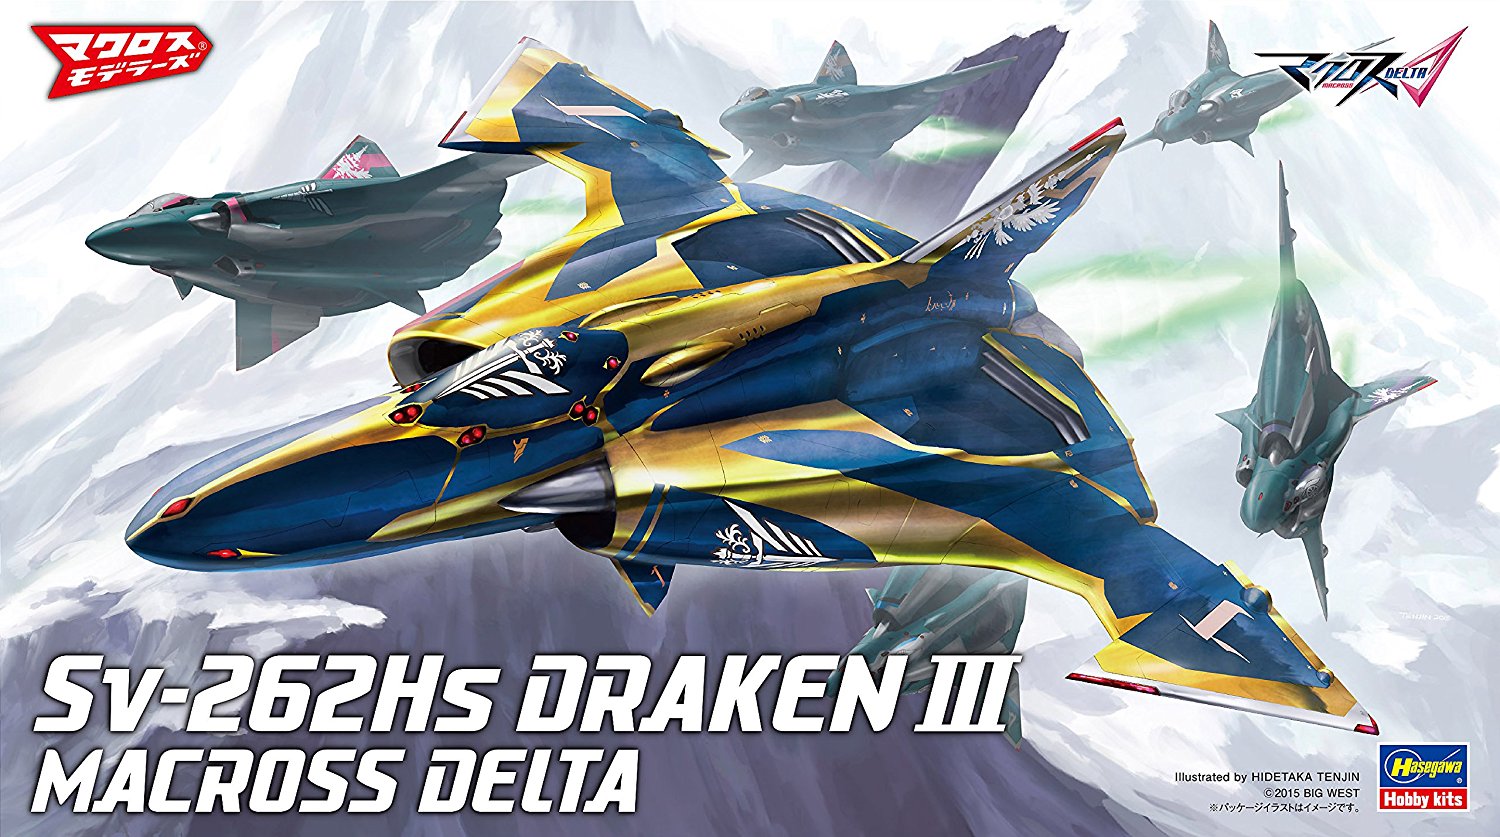 Sv-262Hs Draken III "Macross Delta"